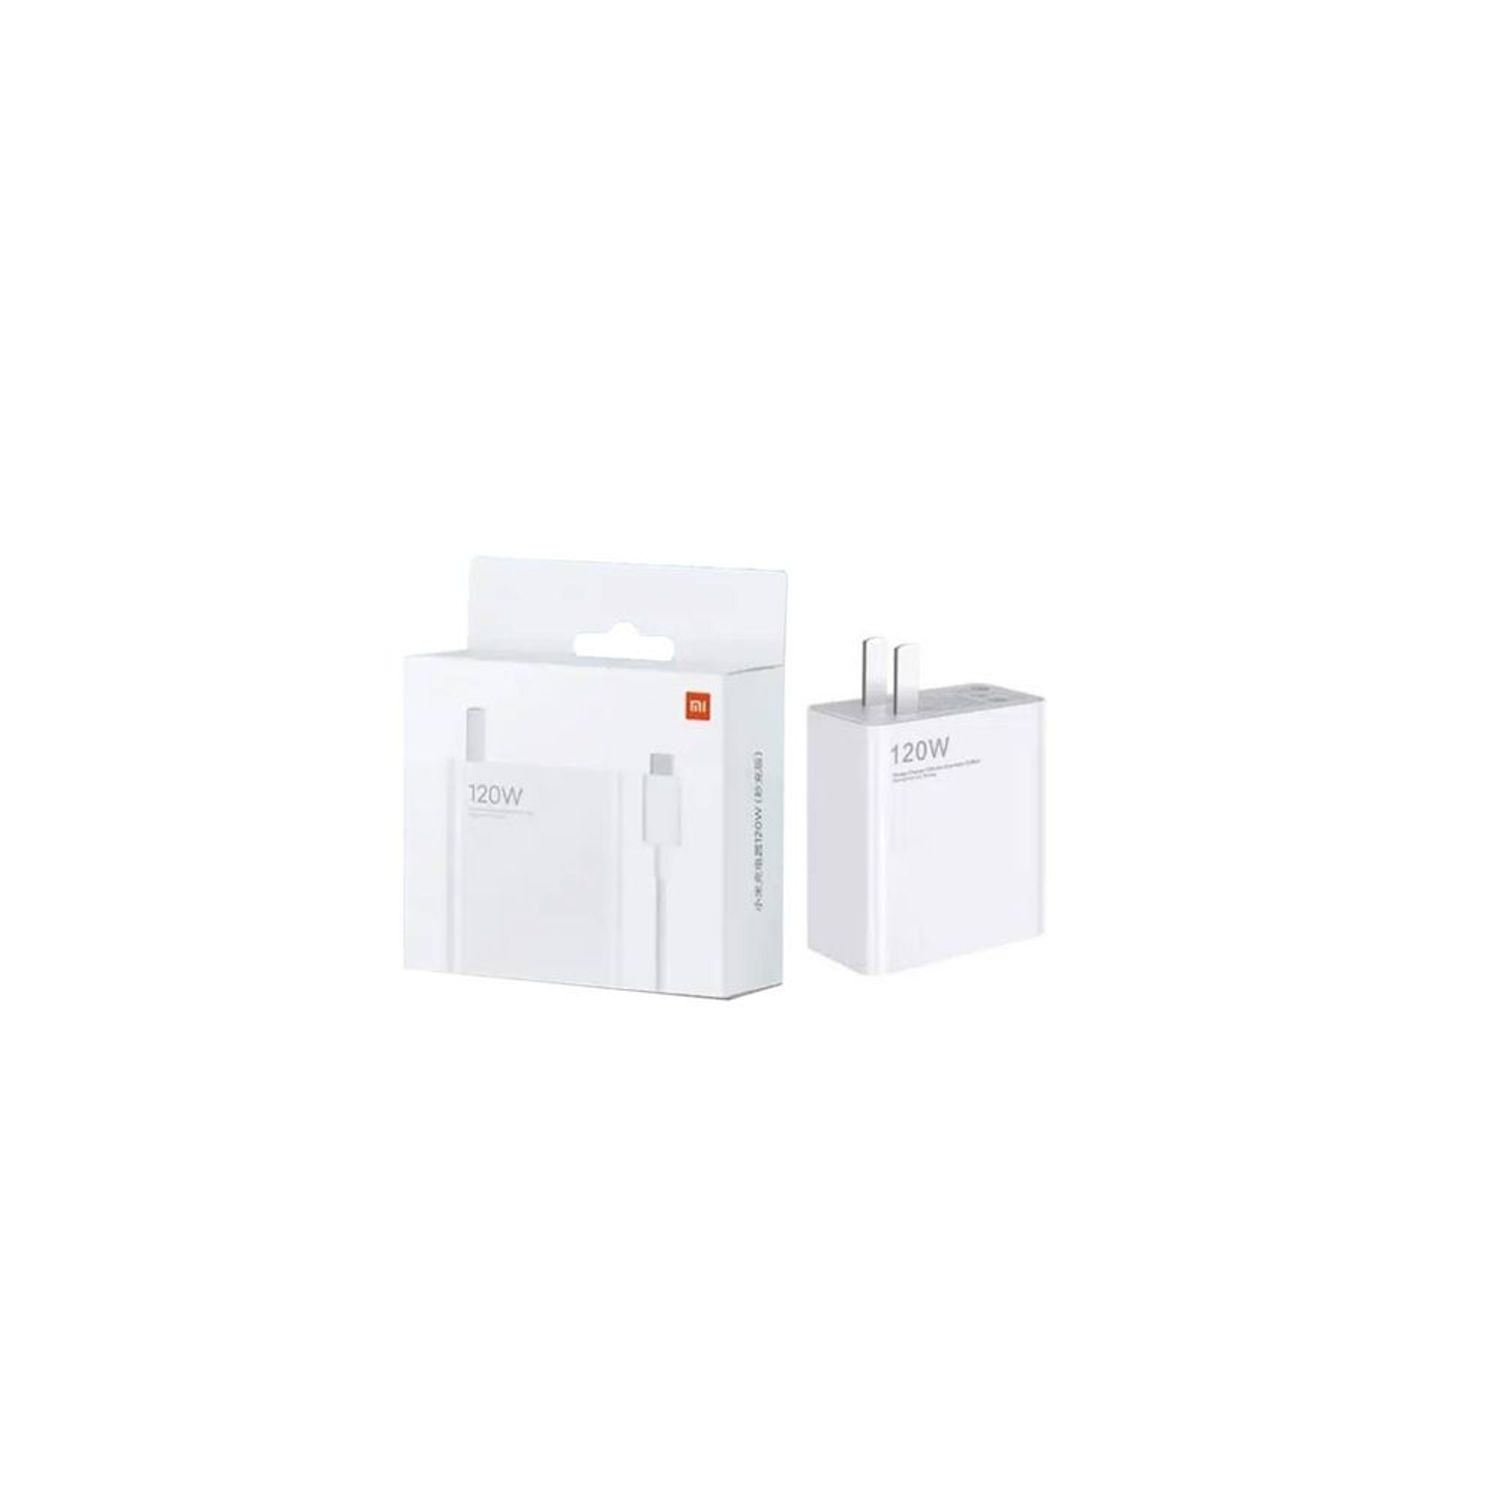 Cargador Para Xiaomi 120W - Carga Rapida - Blanco - Shopstar